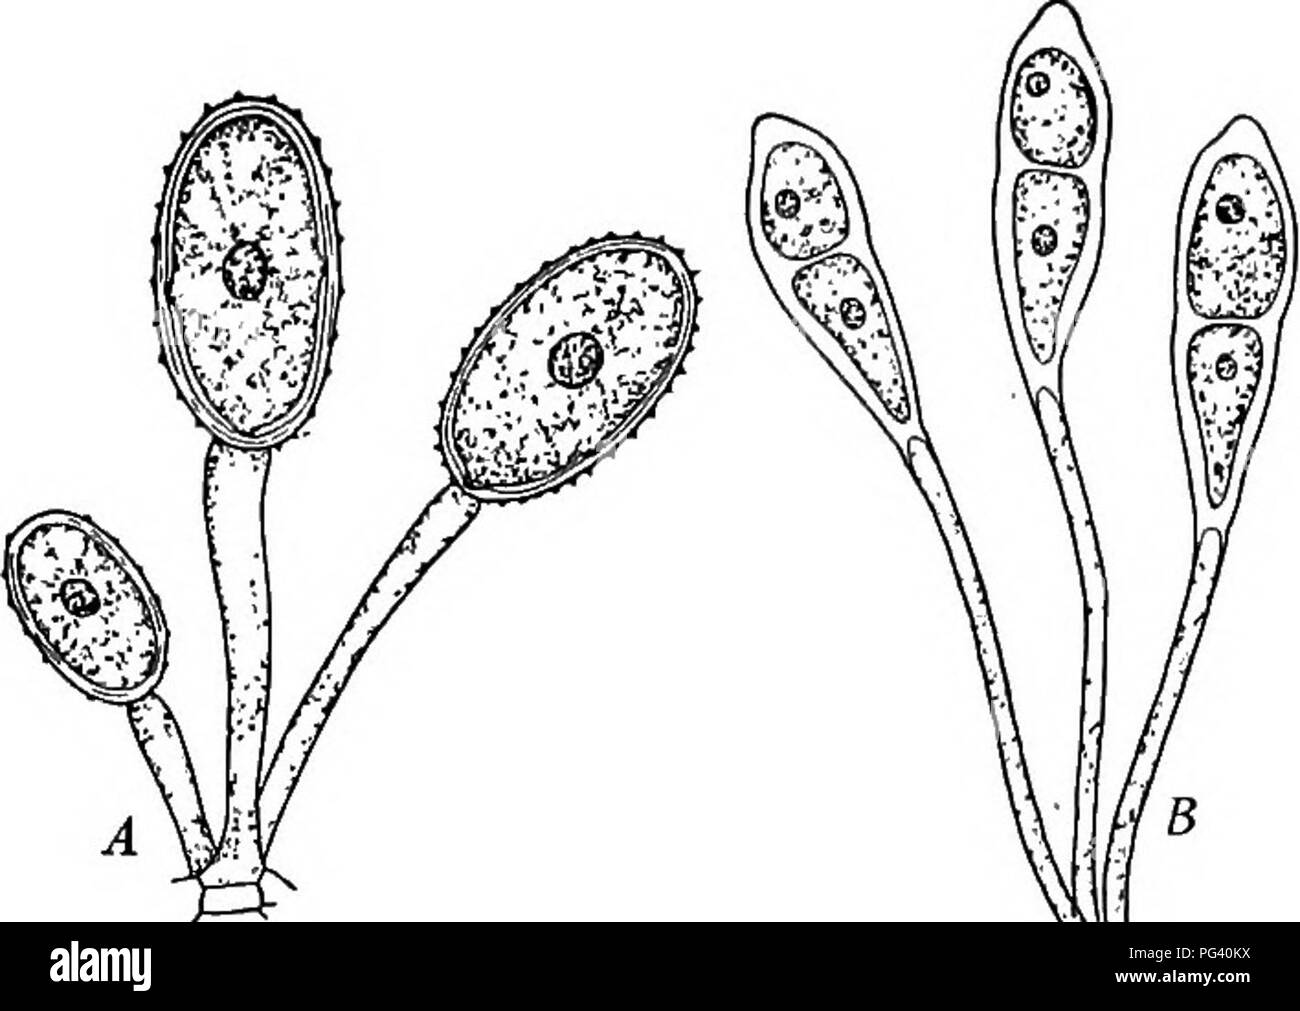 . La vie des plantes et usages des plantes ; un manuel élémentaire, une fondation canadienne pour l'étude de l'agriculture, de l'économie domestique ou d'un collège de la botanique. La botanique. Fig. 188.-Les spores d'hiver de rouille du blé germé. Remarque le peu de filaments à dont les extrémités courtes branches apparaissent portant les spores au début du printemps. Fig. 187. - Un été, les spores de la rouille du blé. B, win- ter les spores de rouille du blé de printemps. spores germent sur les feuilles d'épine-vinette. L'épine-vinette est un arbuste com- mun. On a pensé que si l'épine-vinette a été détruit, la rouille du blé disparaîtrait. Mais il a été constaté que ces spores germent tôt au printemps pourrait o Banque D'Images